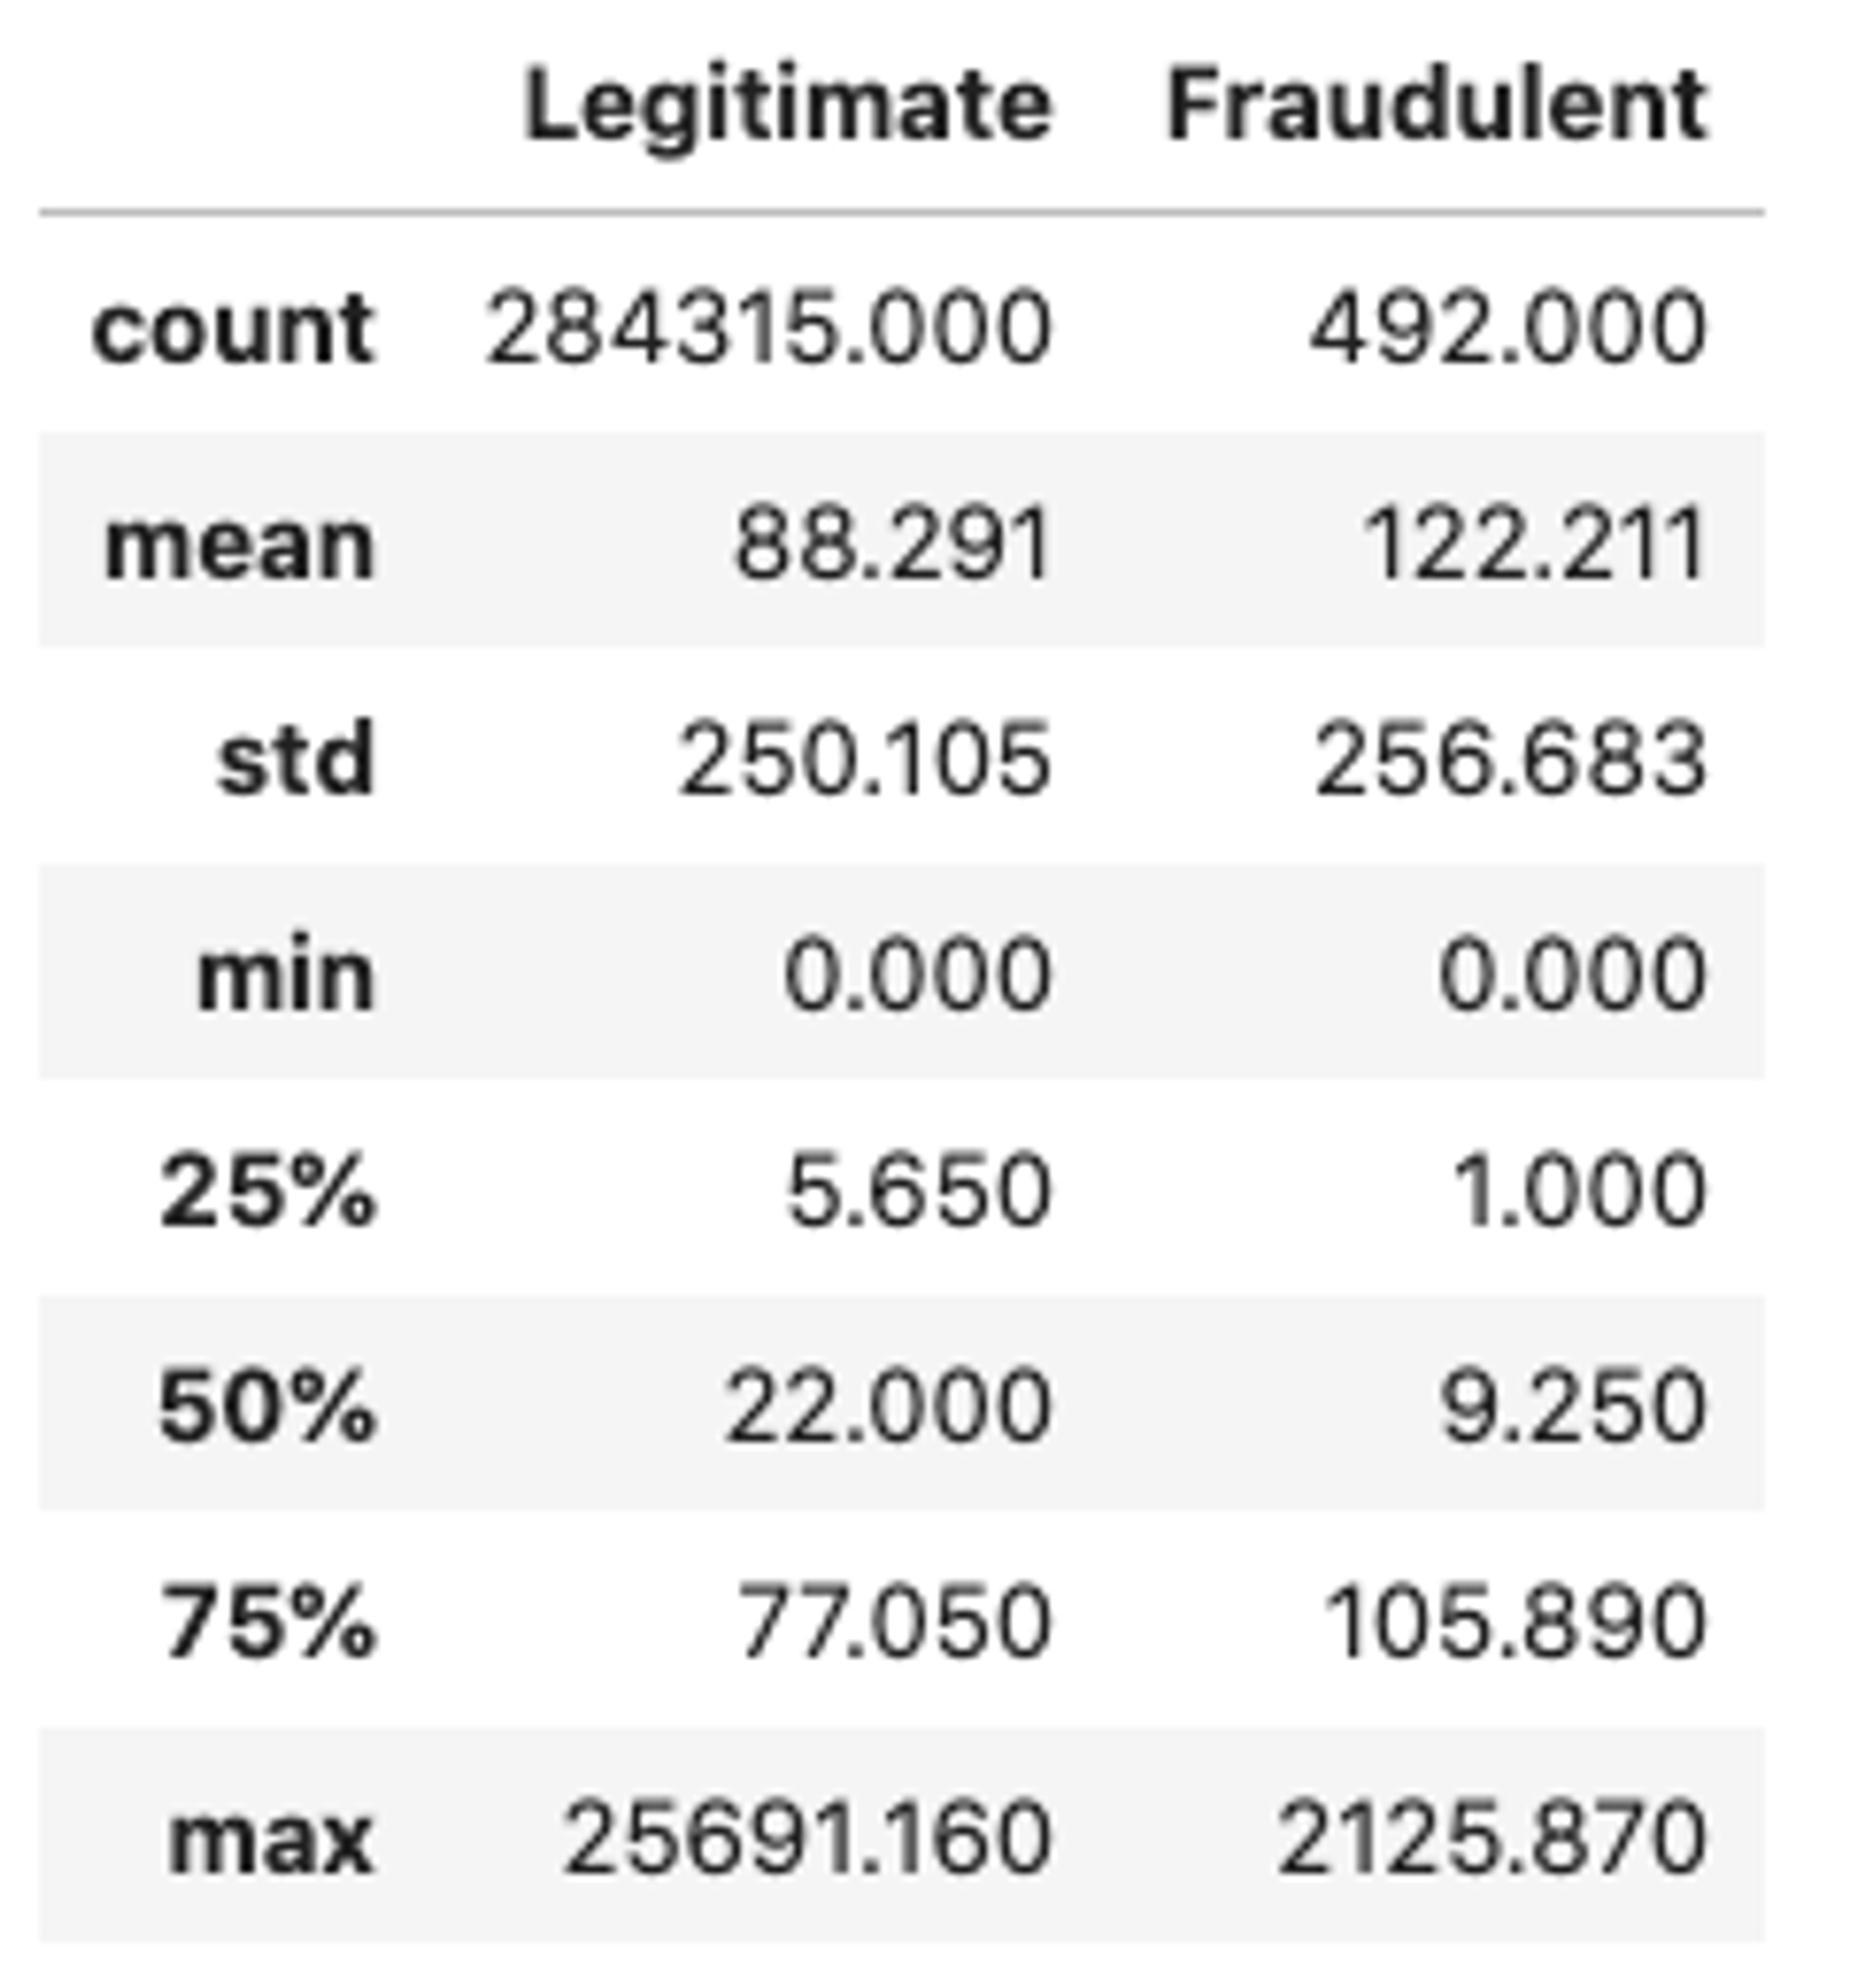 Legitimate vs fraudulent statistics for the Amount attribute (count, mean, std, min, max etc.)